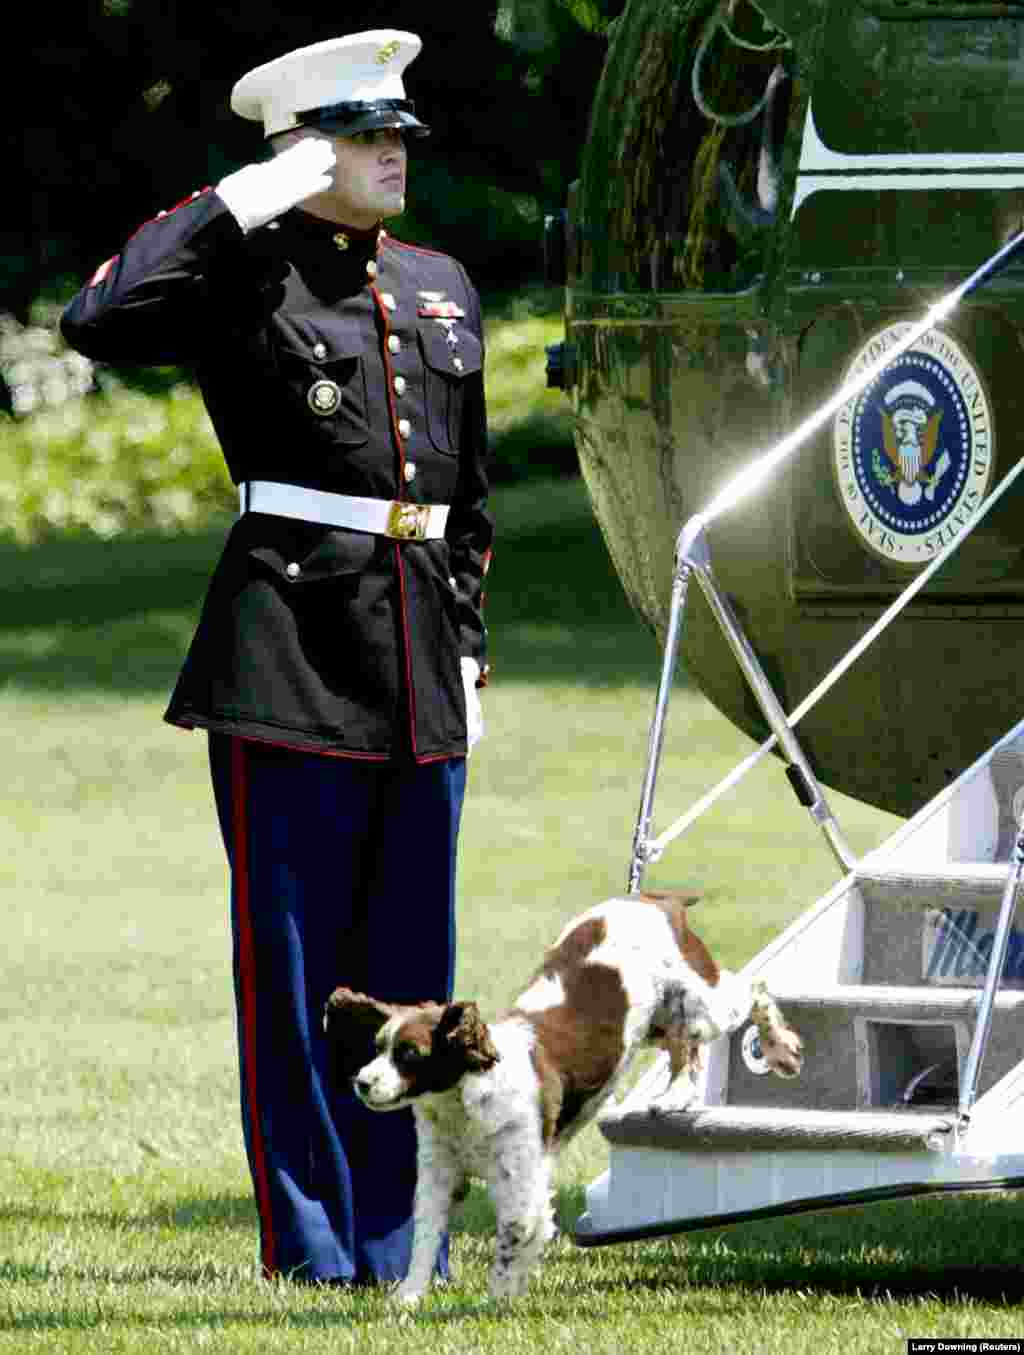 24 червня 2003 року.&nbsp;Спот, песик 43-го президента США Джорджа Буша-молодшого, спускається трапом гелікоптера Marine One на галявину Білого дому під салютування морського піхотинця. Джордж Буш-молодший повернувся з Кемп-Девіда, де зустрічався з президентом Пакистану Первезом Мушаррафом, щоб обговорити військові питання та безпеку